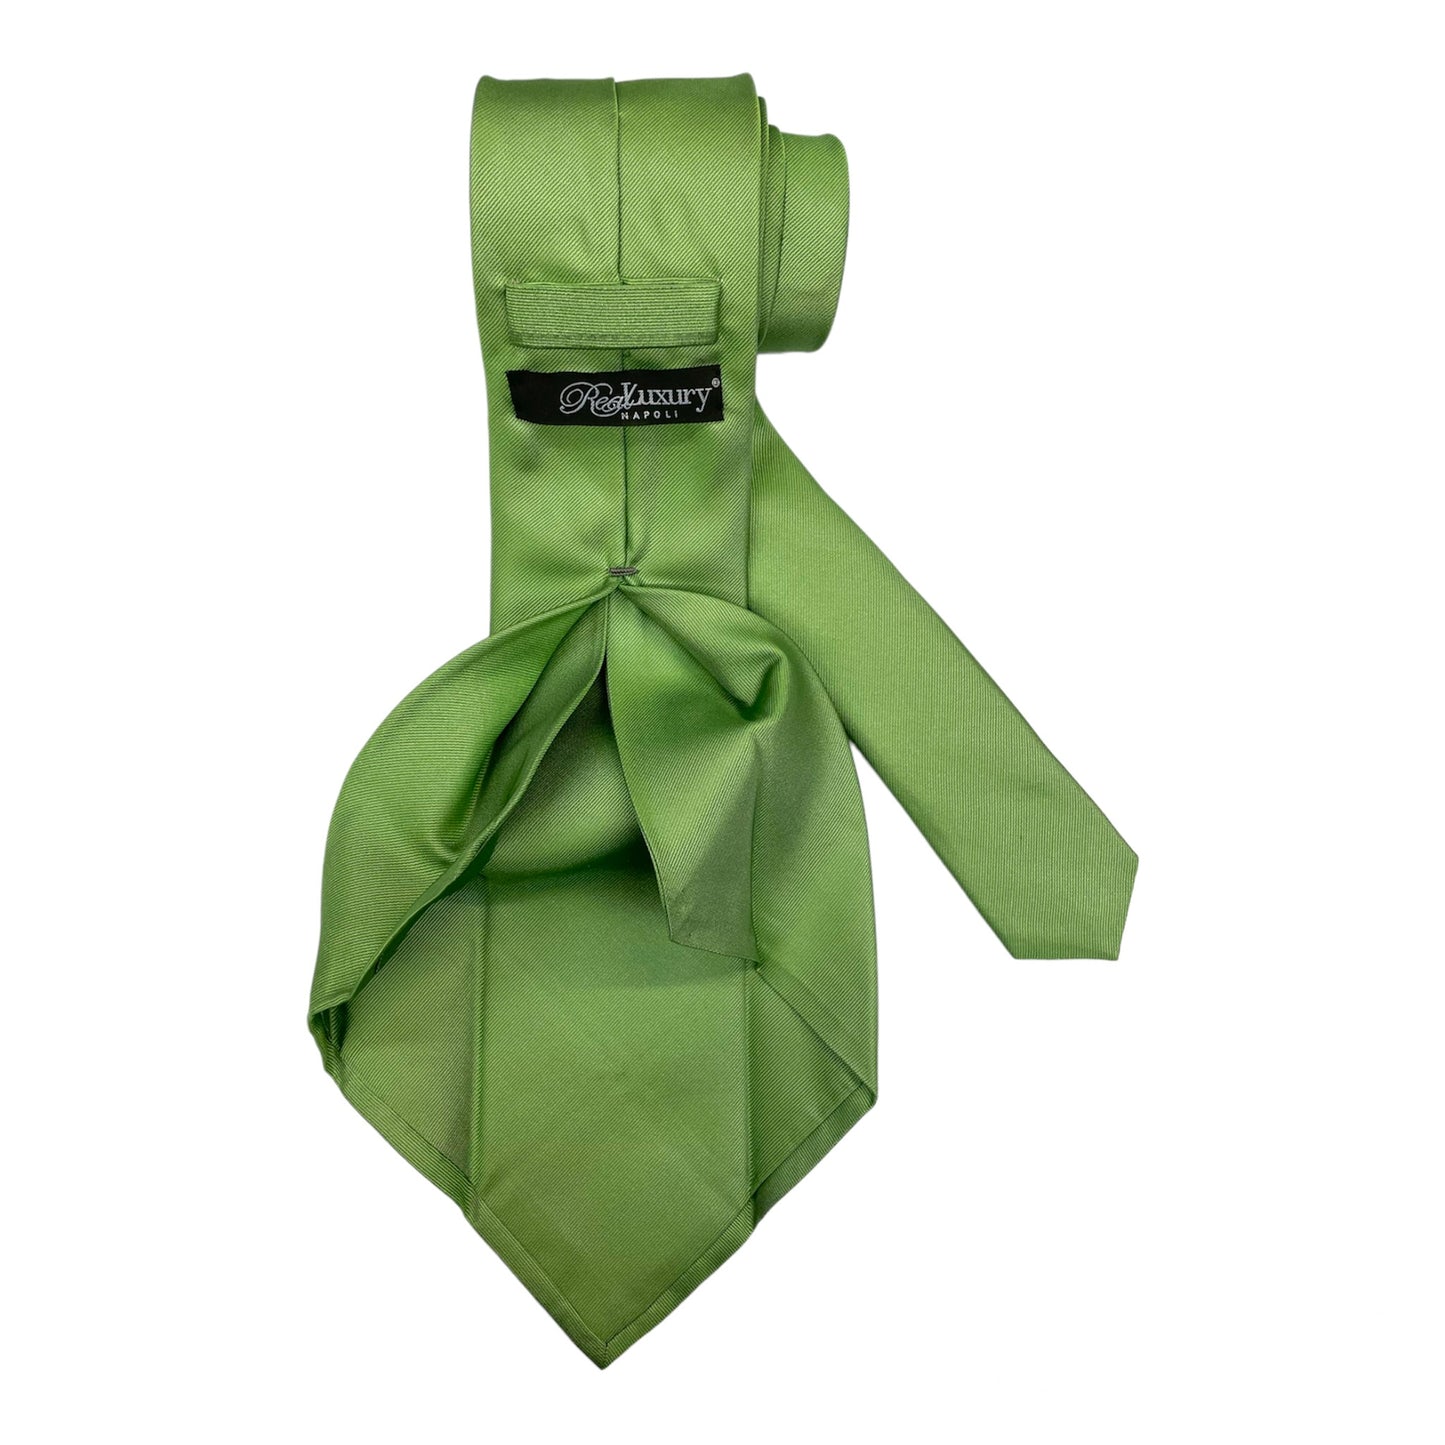 Solid color green silk tie